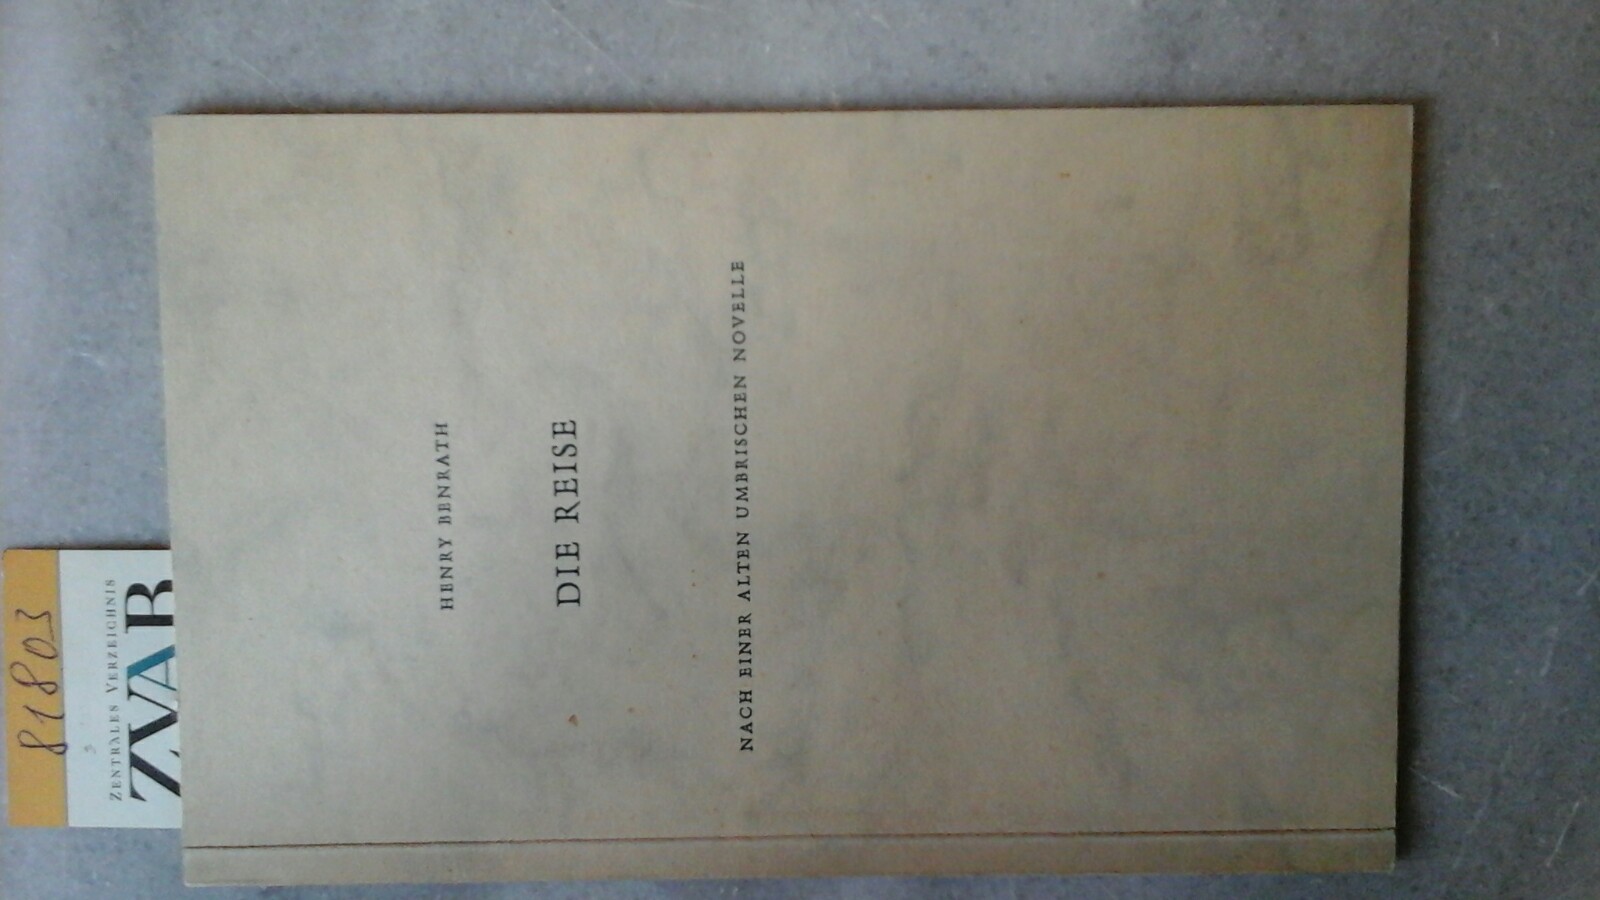 BENRATH, HENRY: Die Reise. Nach einer alten umbrischen Novelle. (Erstdruck des Benrath- Archivs in 100 Expl.) Erste Ausgabe dieses Sonderdrucks, nummeriert.